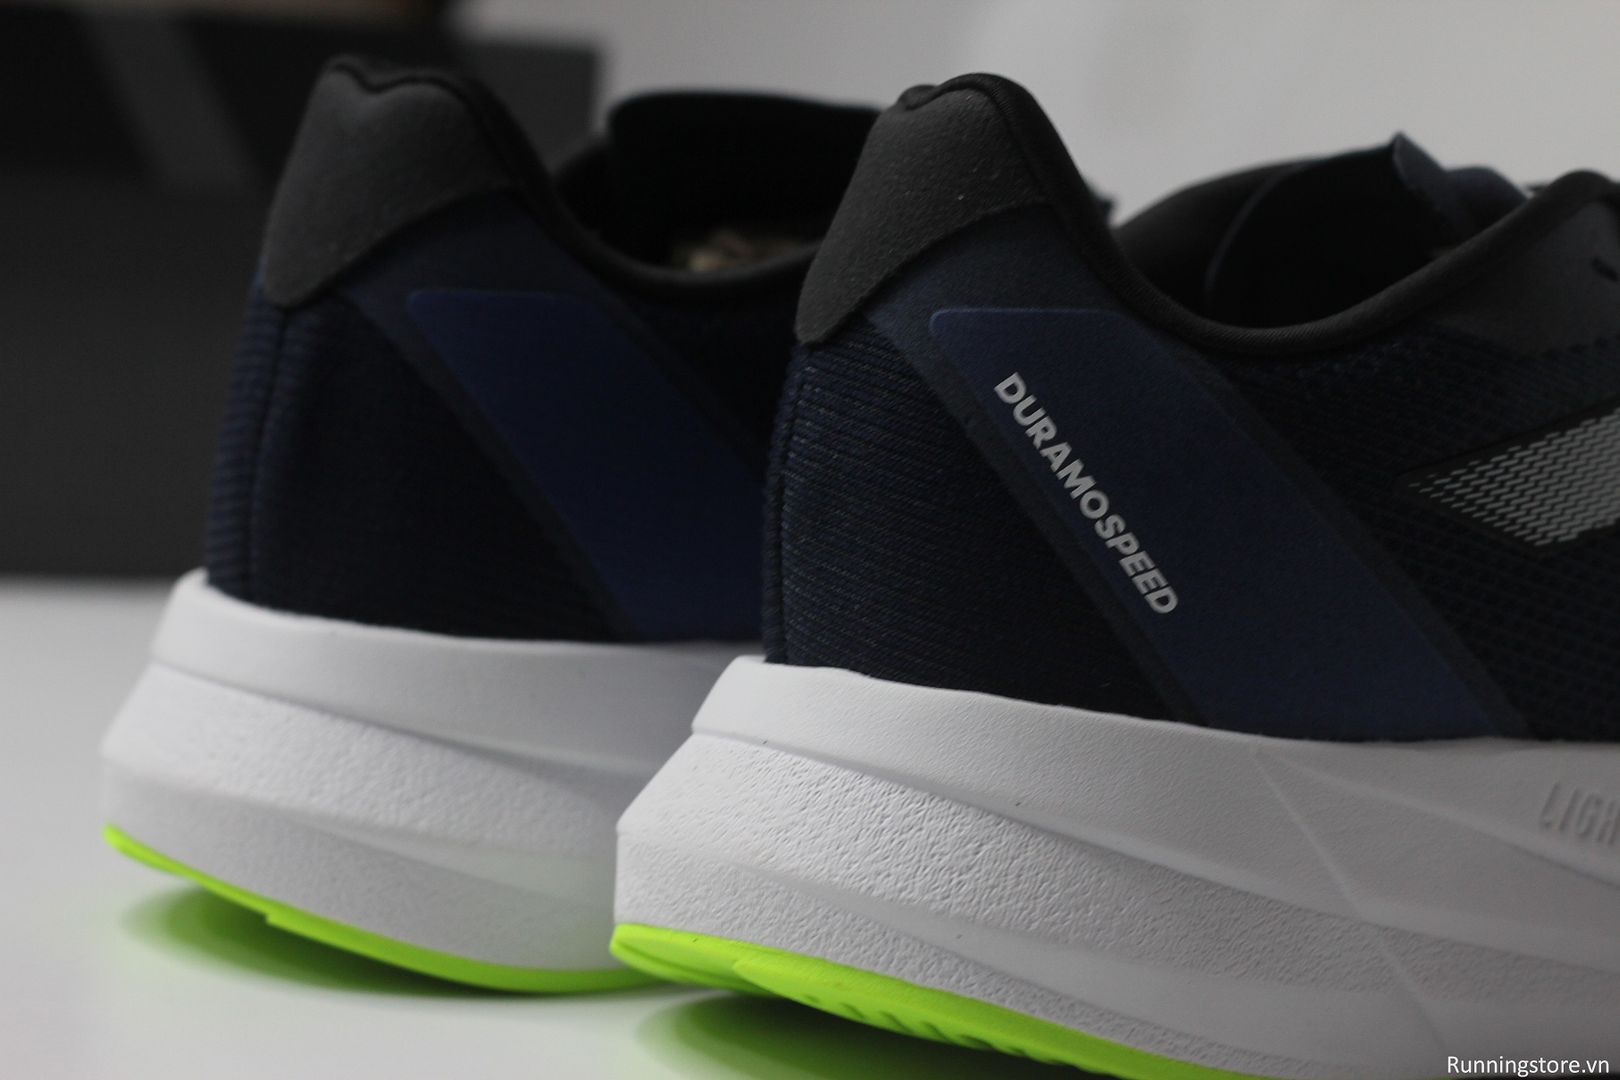 Giày chạy bộ Adidas Duramo Speed màu xanh đen IF0566